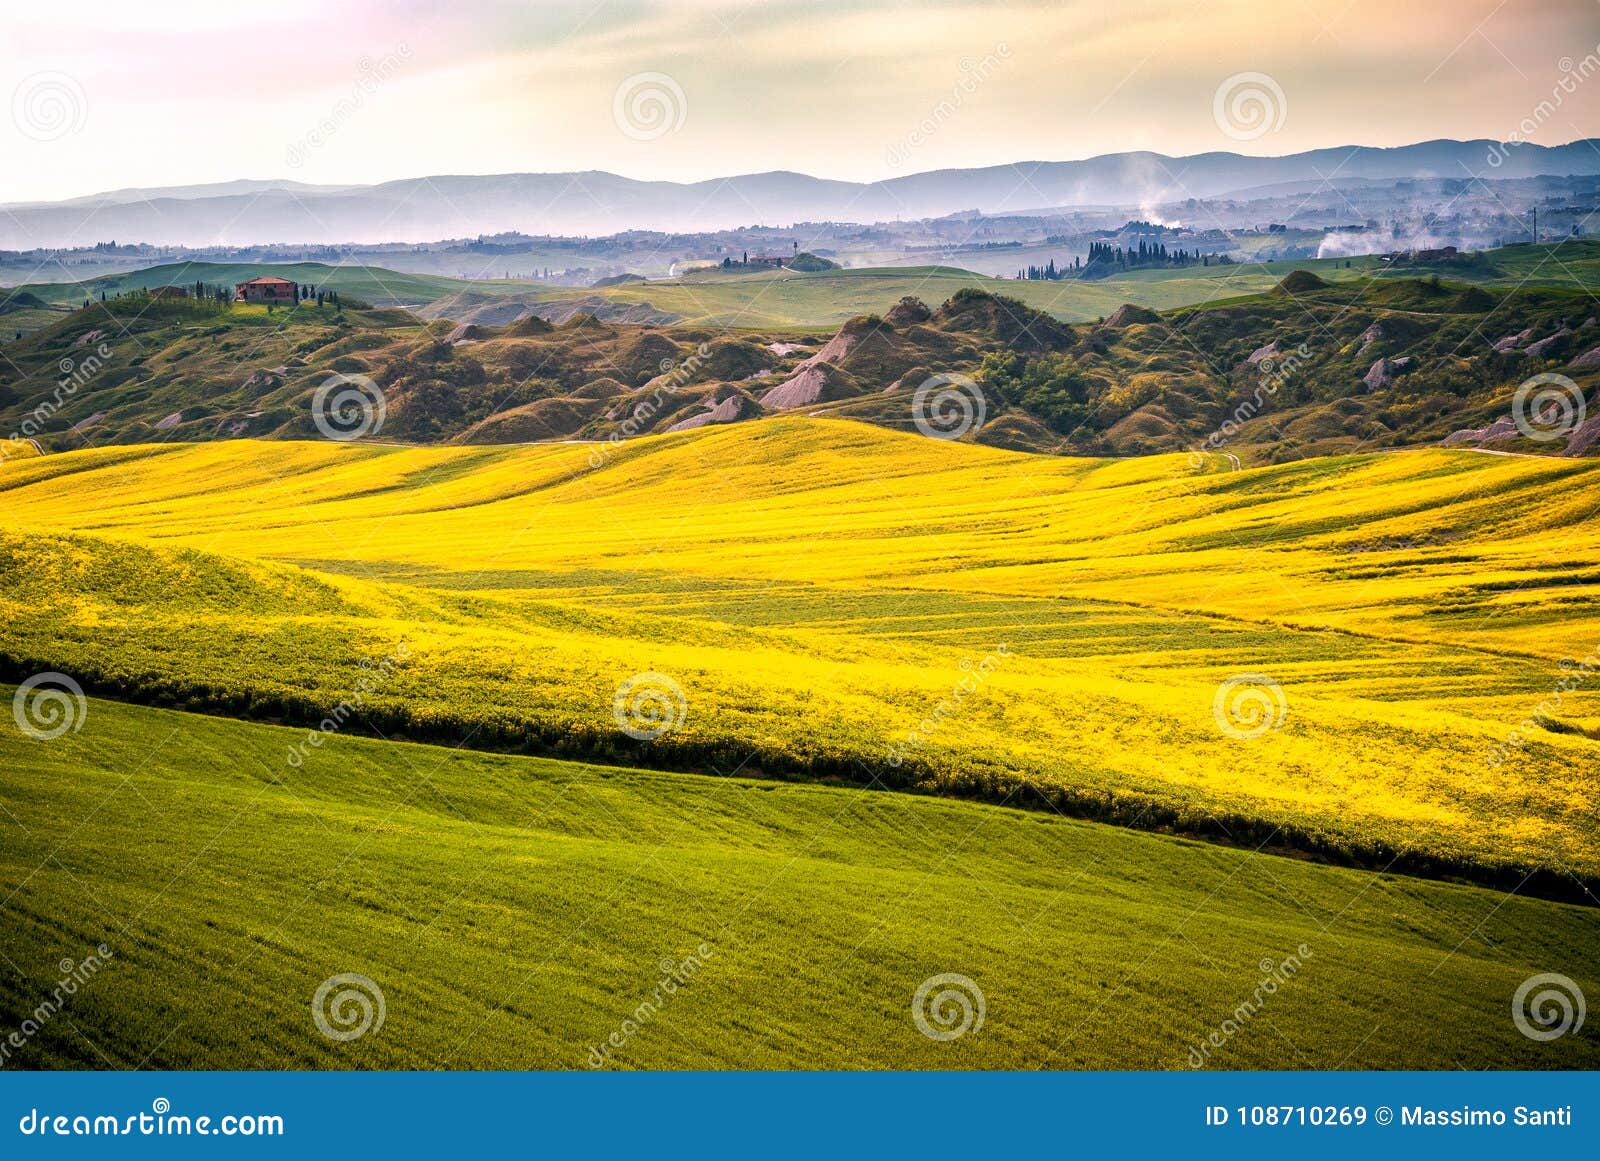 Fiori Gialli Toscana.Arbia Toscana Italia Di Val D Colline Coltivate Con Grano E